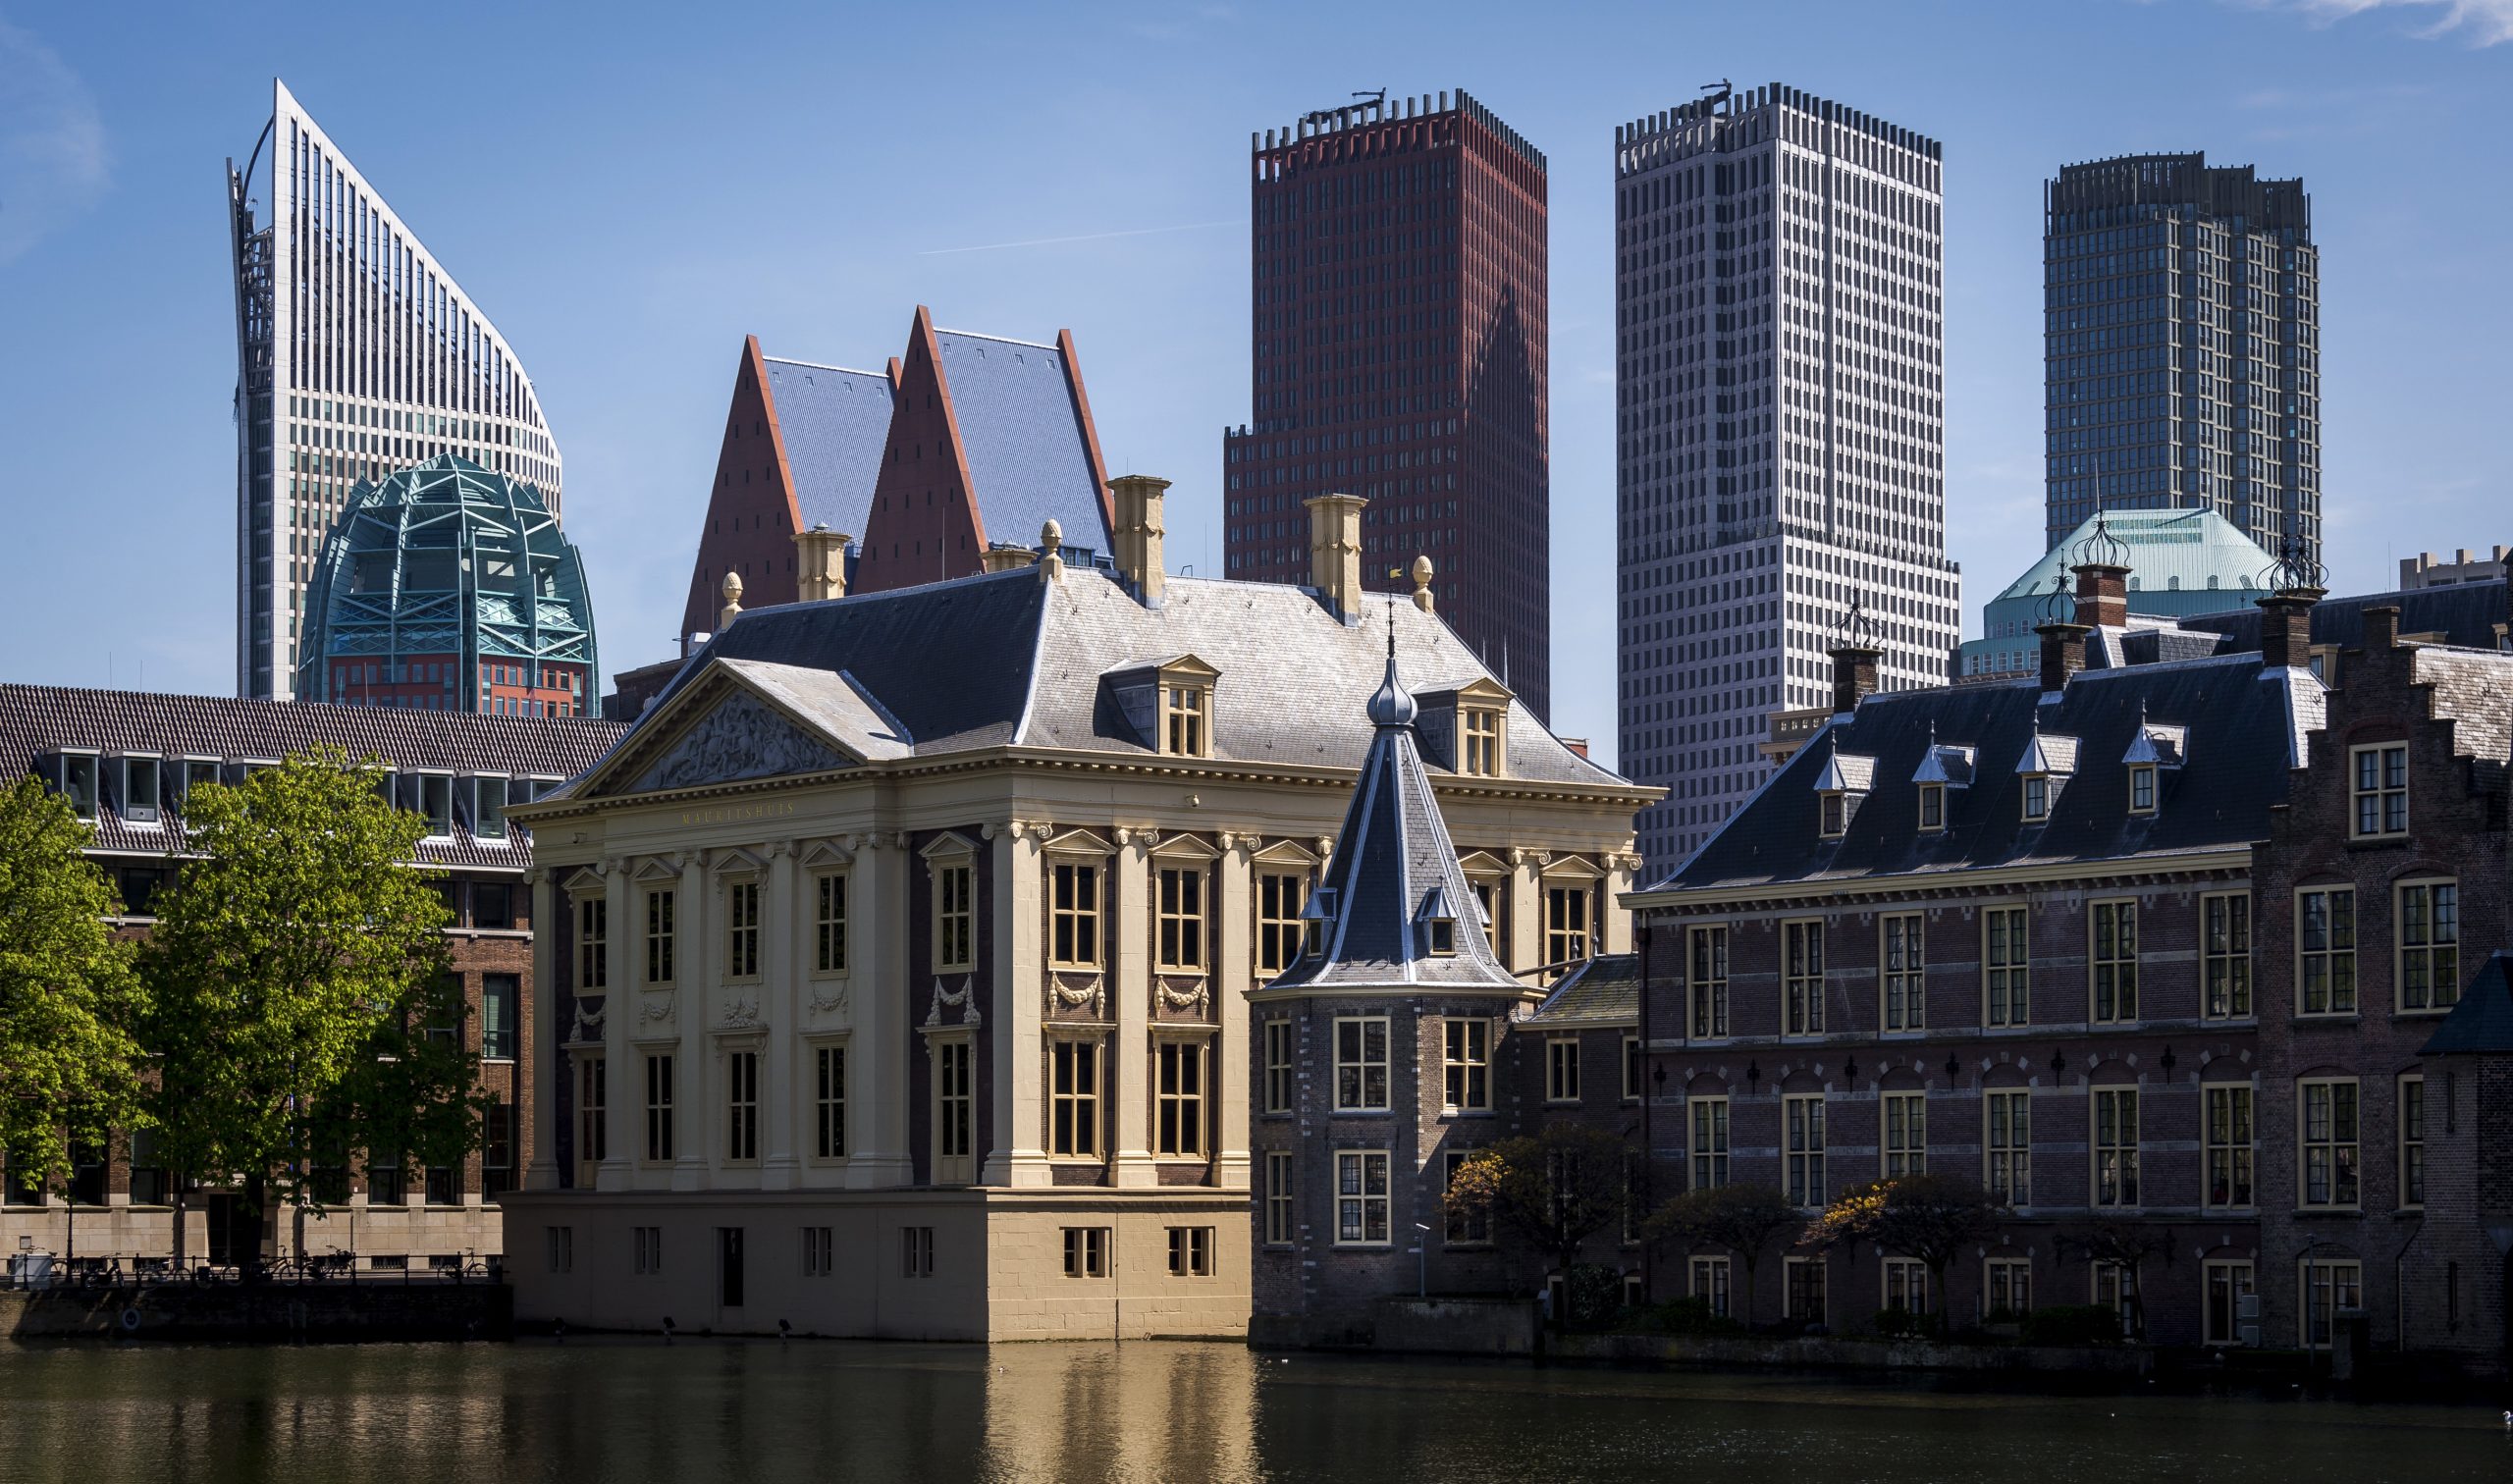 Nederlandse studenten gaan het liefst aan de slag bij de Rijksoverheid, KLM en Tesla. Dat blijkt uit de jaarlijkse ranglijst ‘Most Attractive Employers’ van onderzoeksbureau Universum, dat dinsdag werd gepubliceerd.